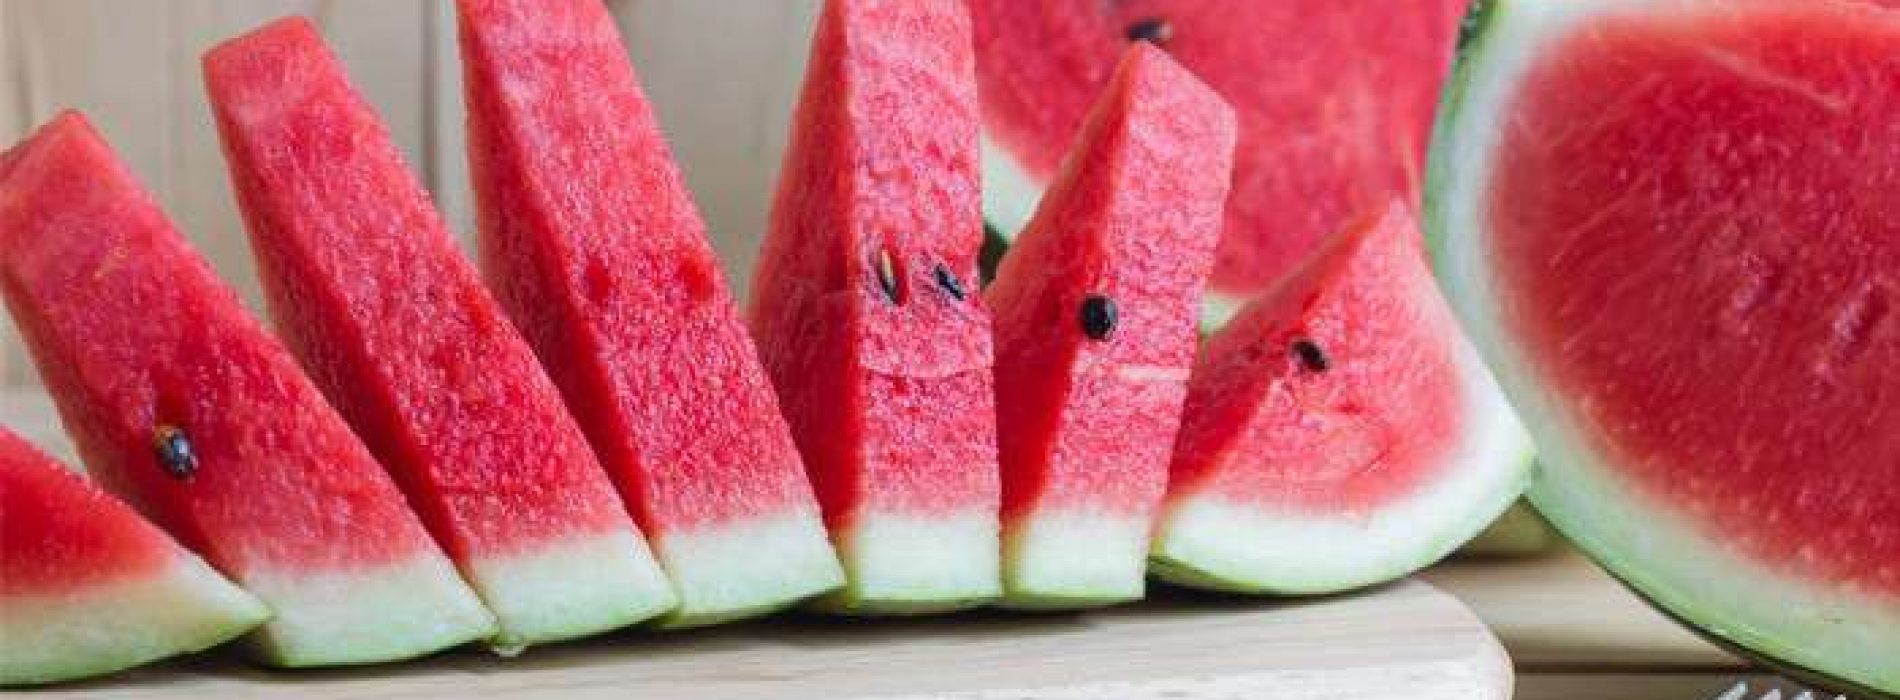 6 verrassende gezondheidsfeiten over watermeloen die je niet kent